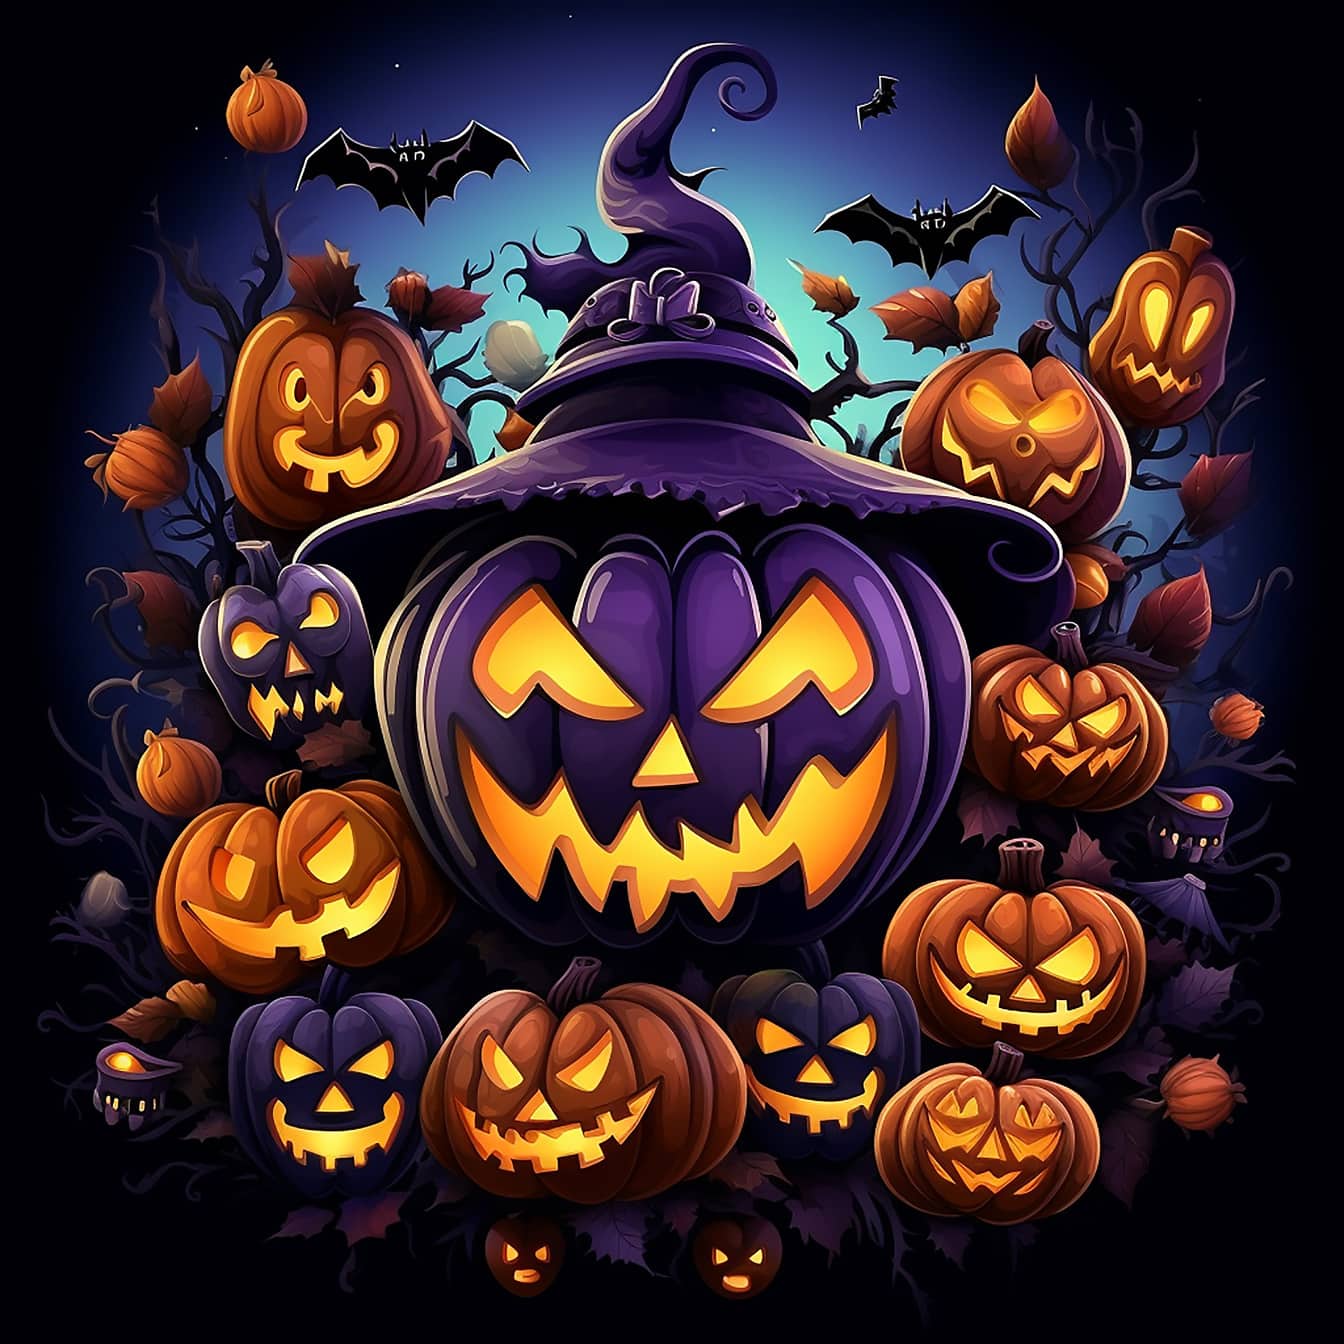 Ilustración gráfica de terror de calabazas violáceas de Halloween